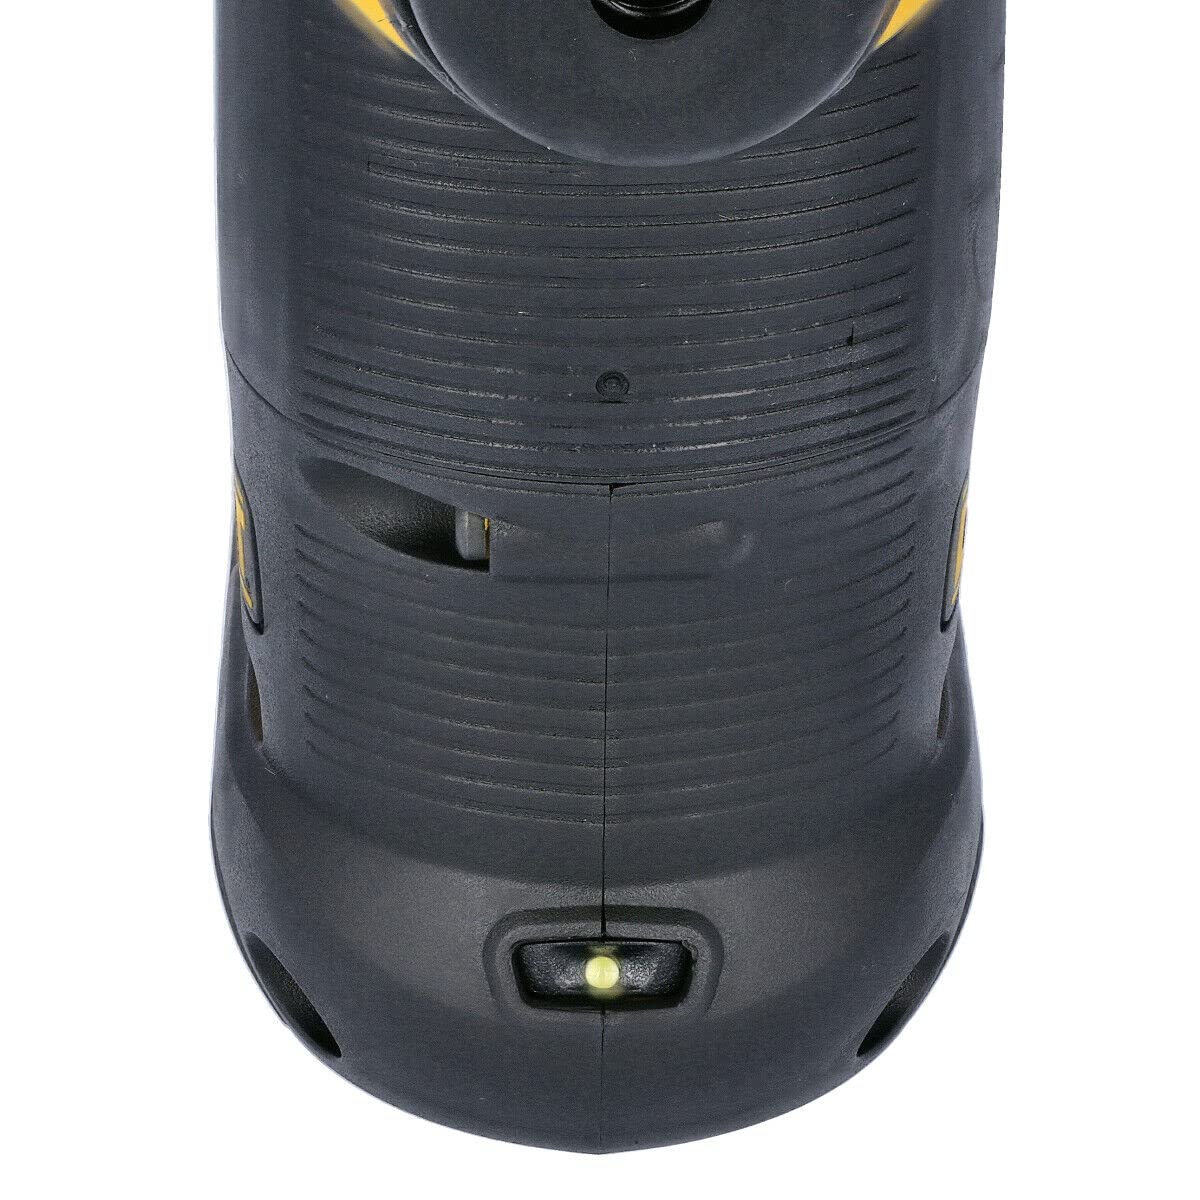 DEWALT DCH273N-XJ 18V XR Li-Ion SDS Plus Rotary Hammer Drill, 18 W, 18 V, Yellow/Black